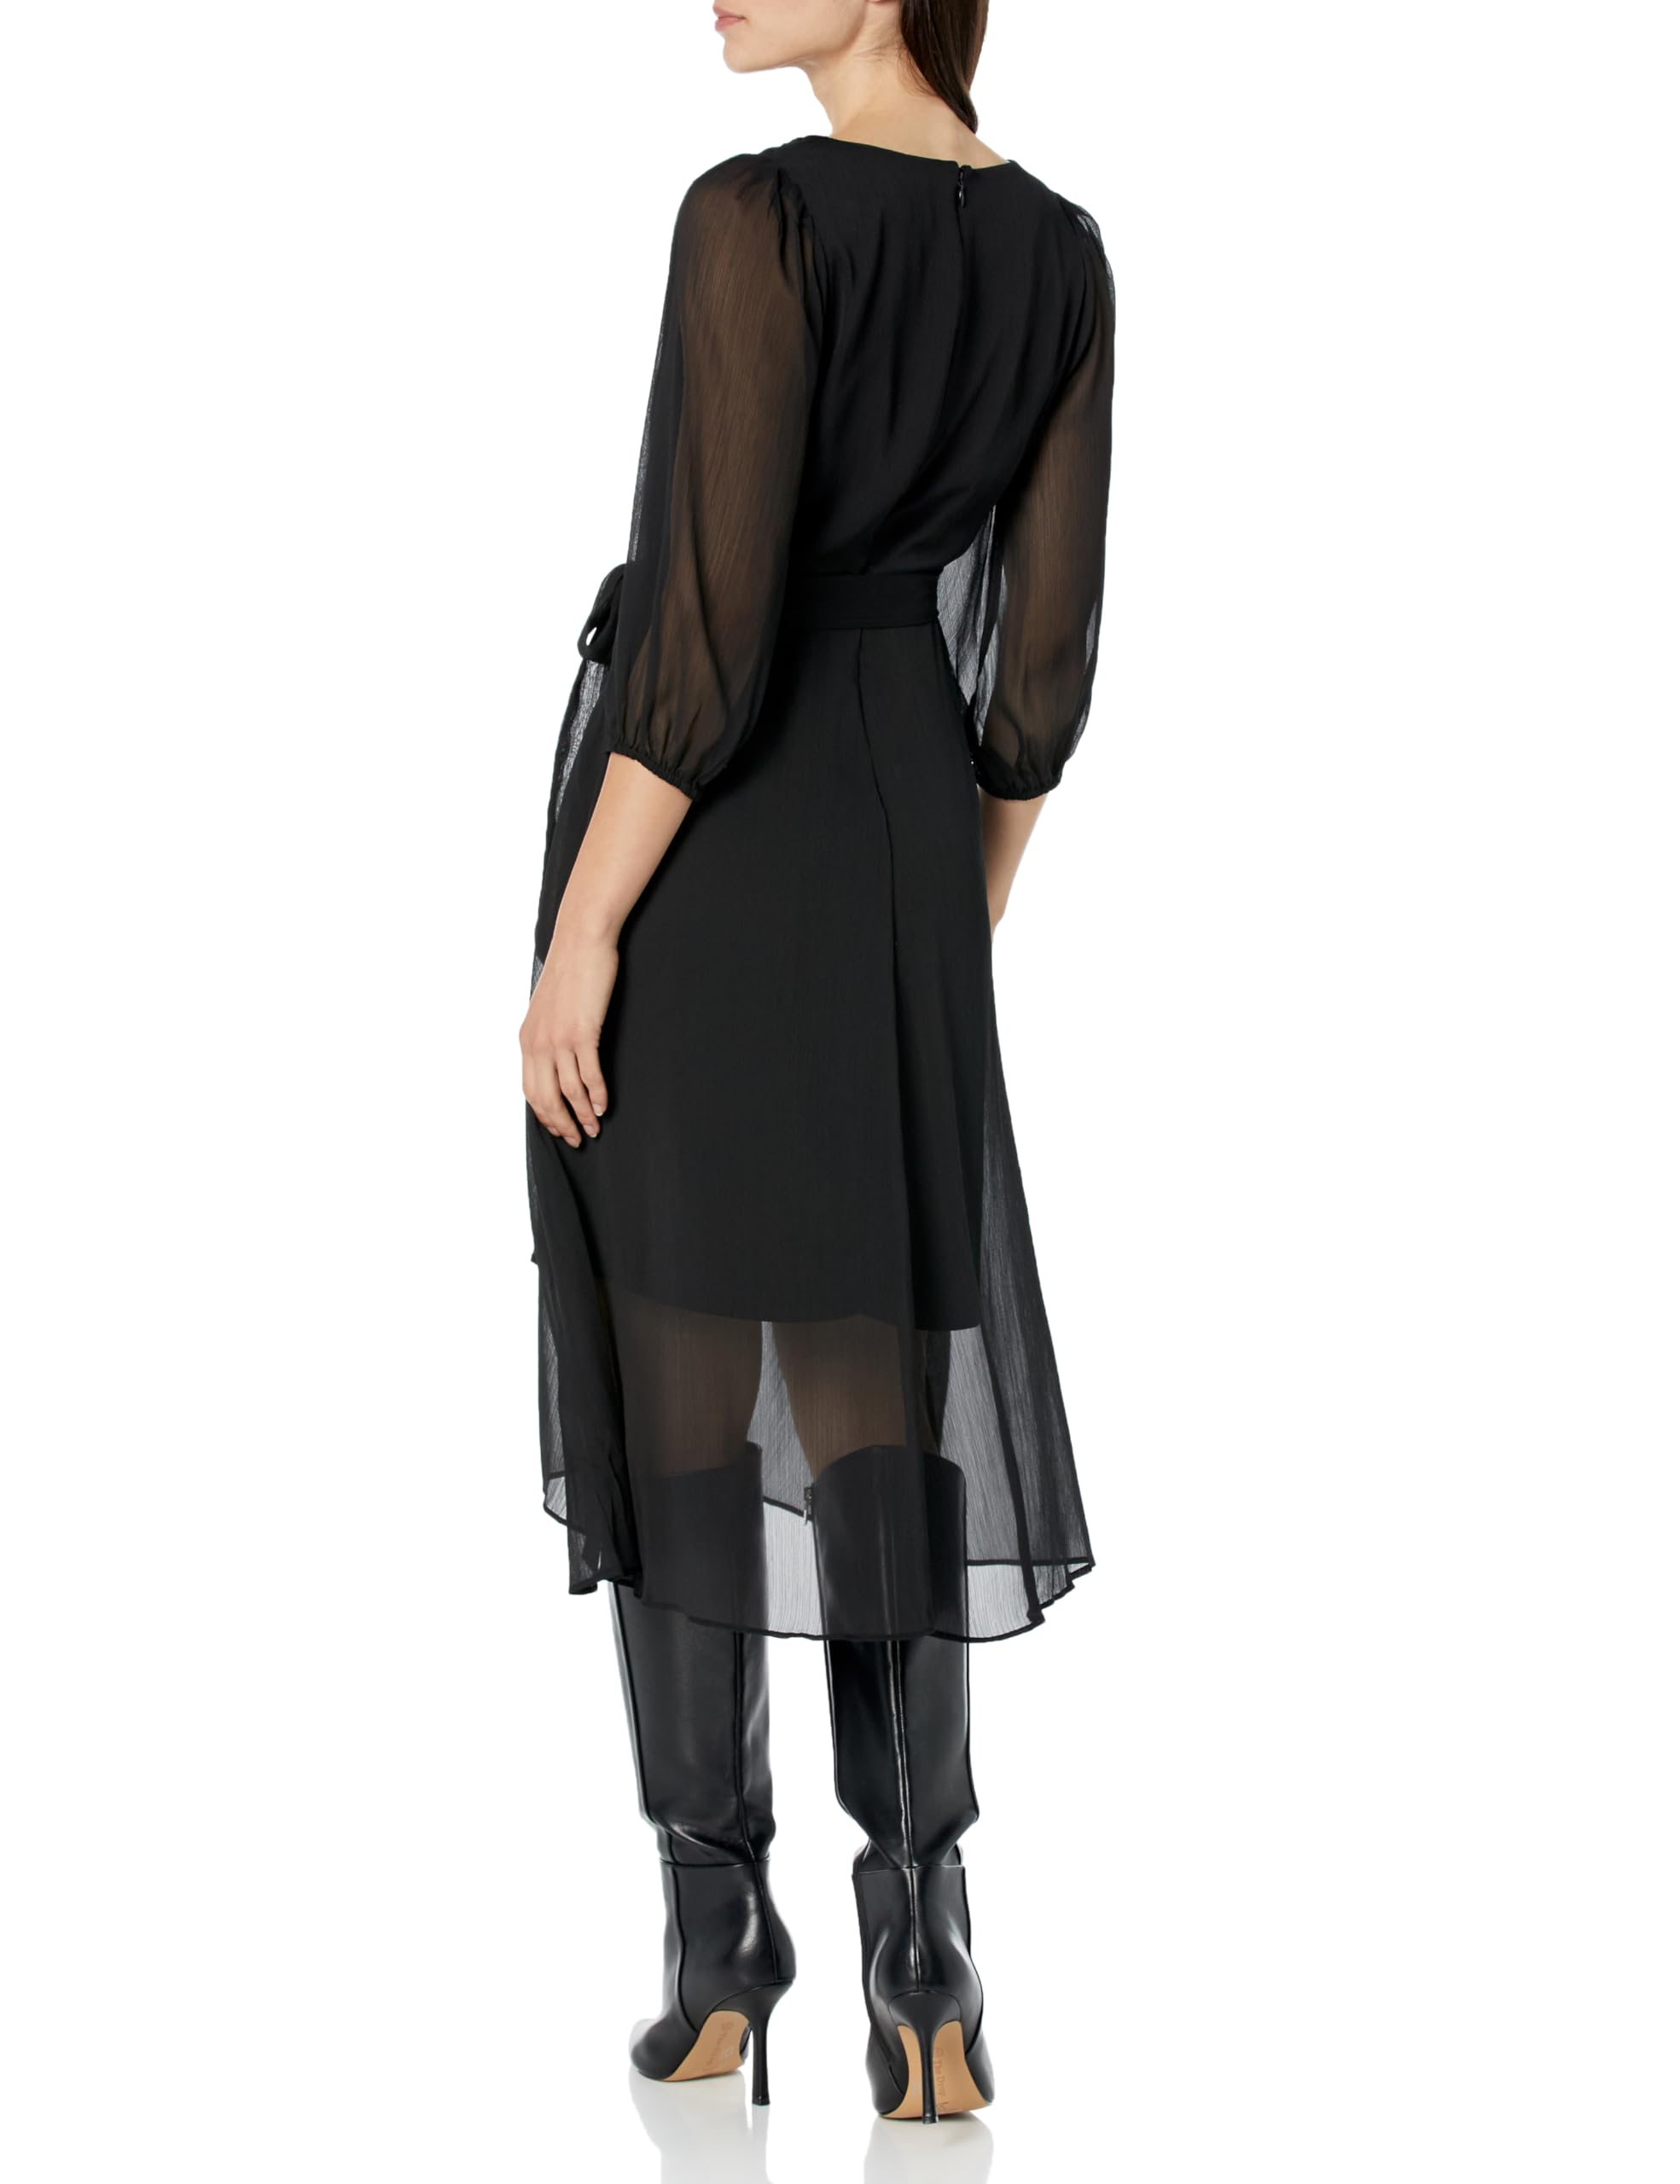 DKNY Women's Pleated Faux Wrap Dress